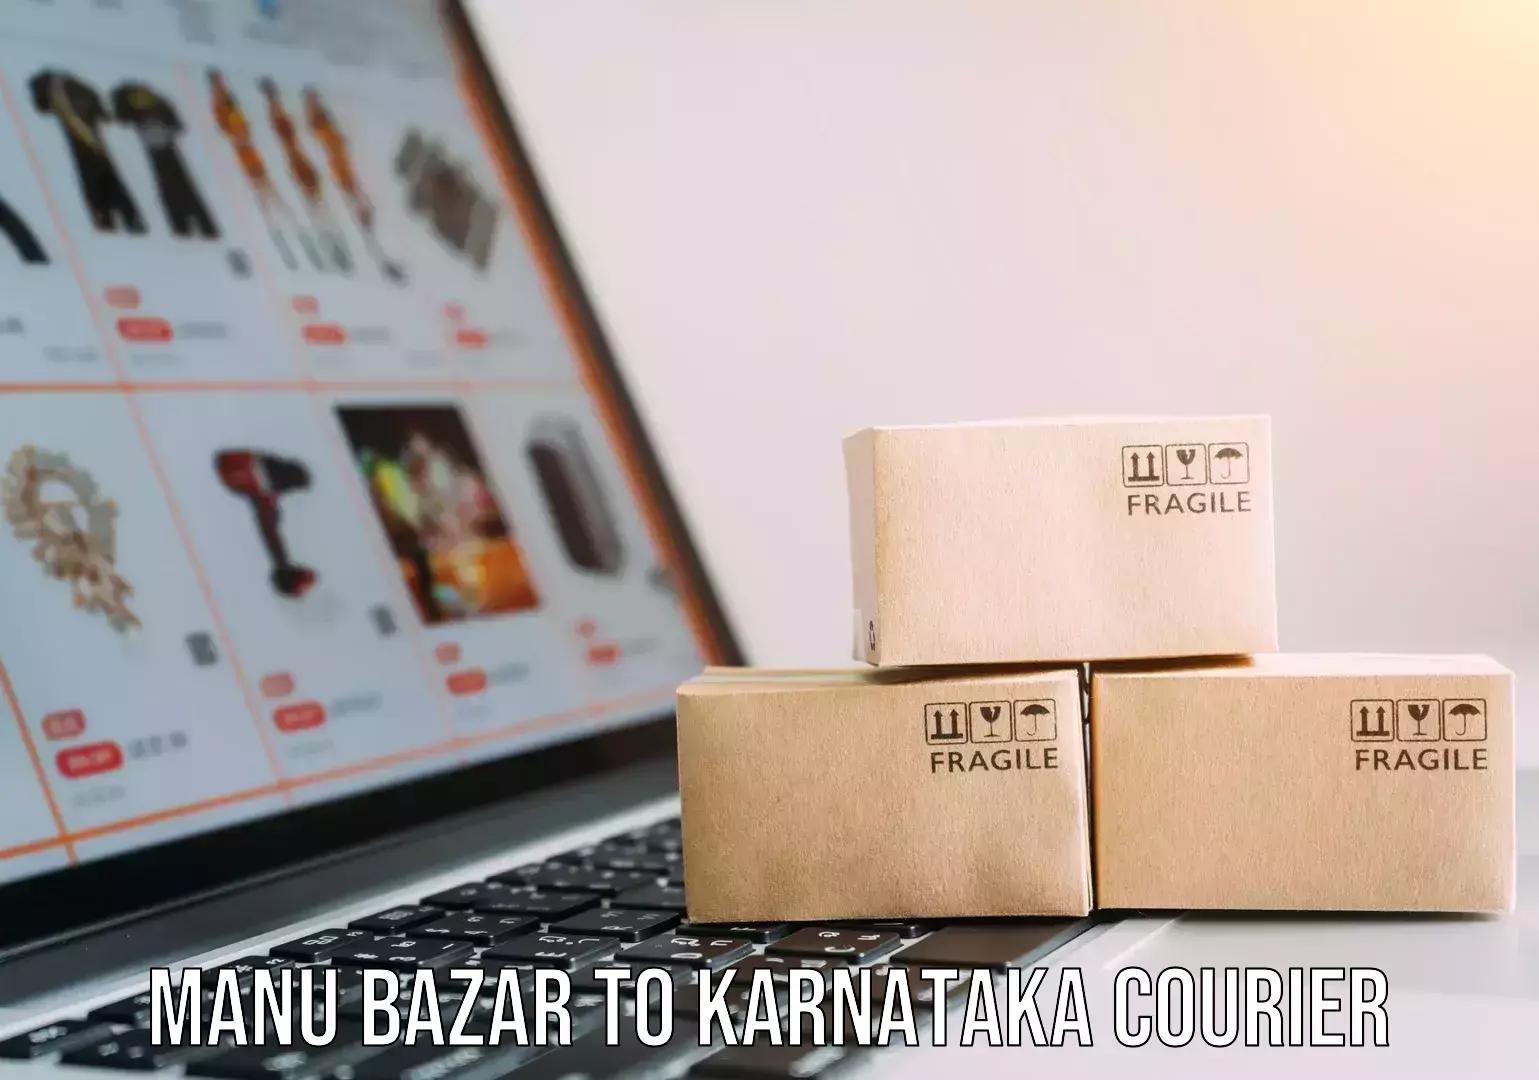 Premium courier services Manu Bazar to Karnataka